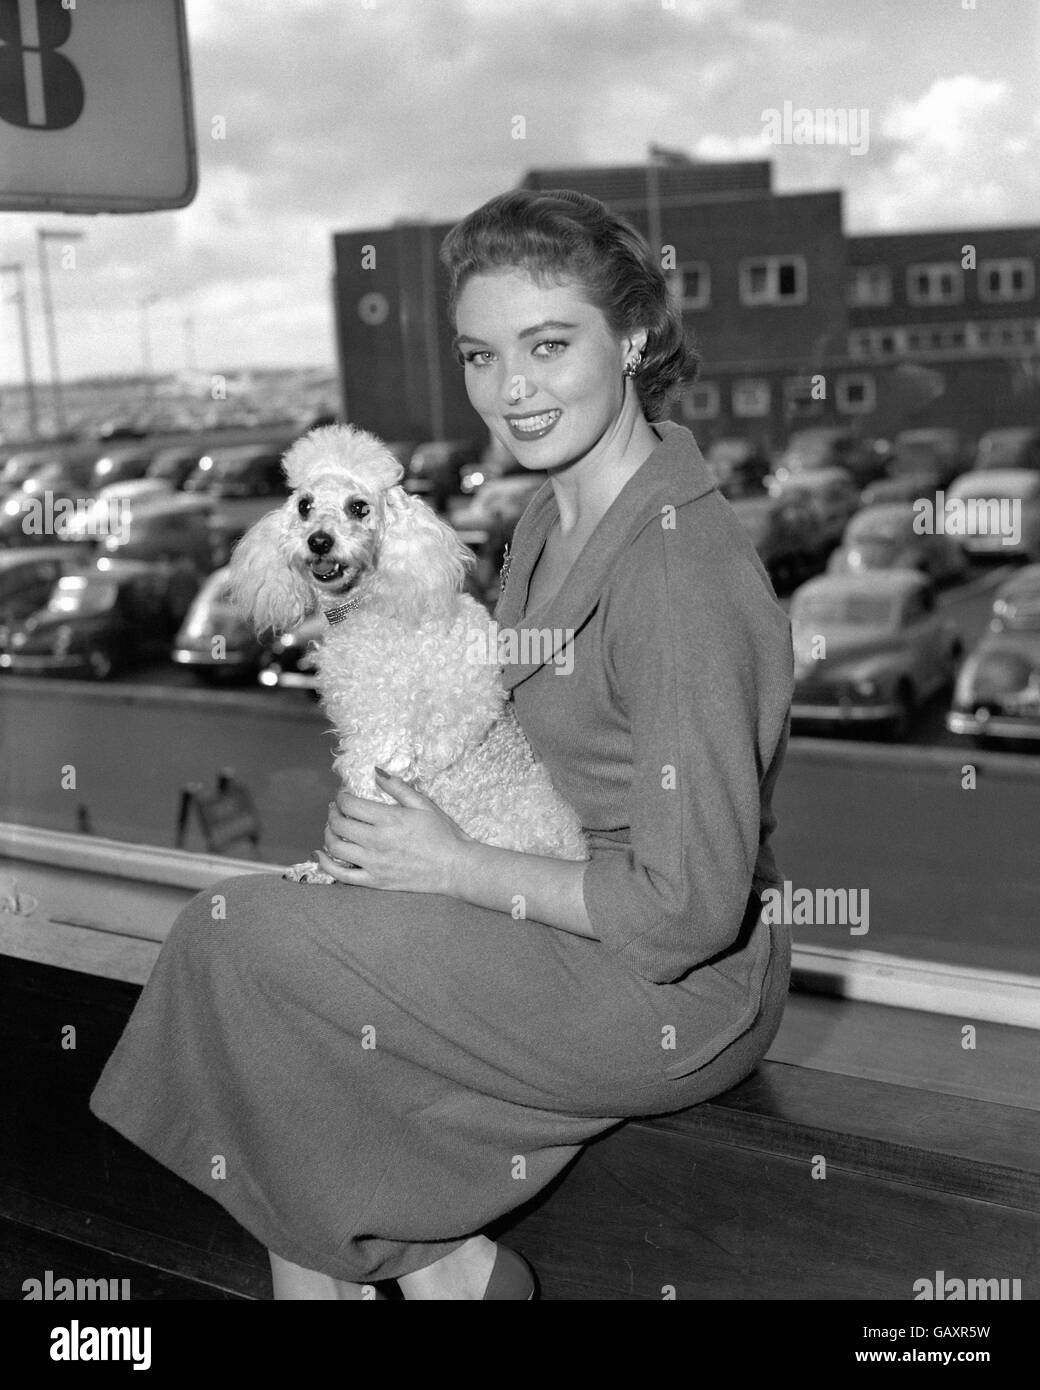 La sig.ra Gran Bretagna, Leila Williams, è stata incontrata dal suo poodle Mimi quando è arrivata all'aeroporto di Londra, stava ritornando da Helsinki dove ha modellato il tessile britannico alla fiera commerciale d'oltremare. Foto Stock